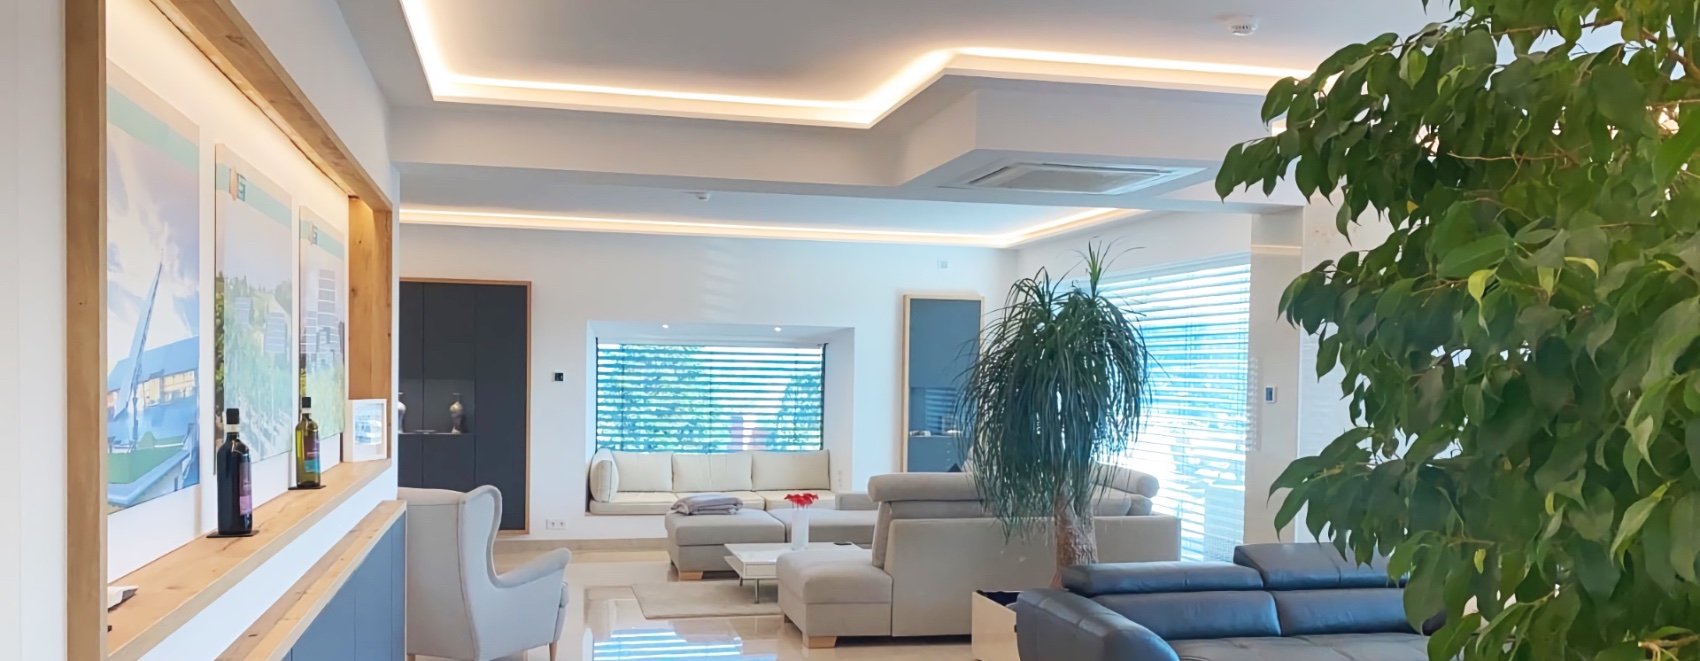 Luxuriös ausgestattetes Wohnzimmer mit LED-Vouten zur indirekten Beleuchtung. Warm-weiße Ausleuchtung.